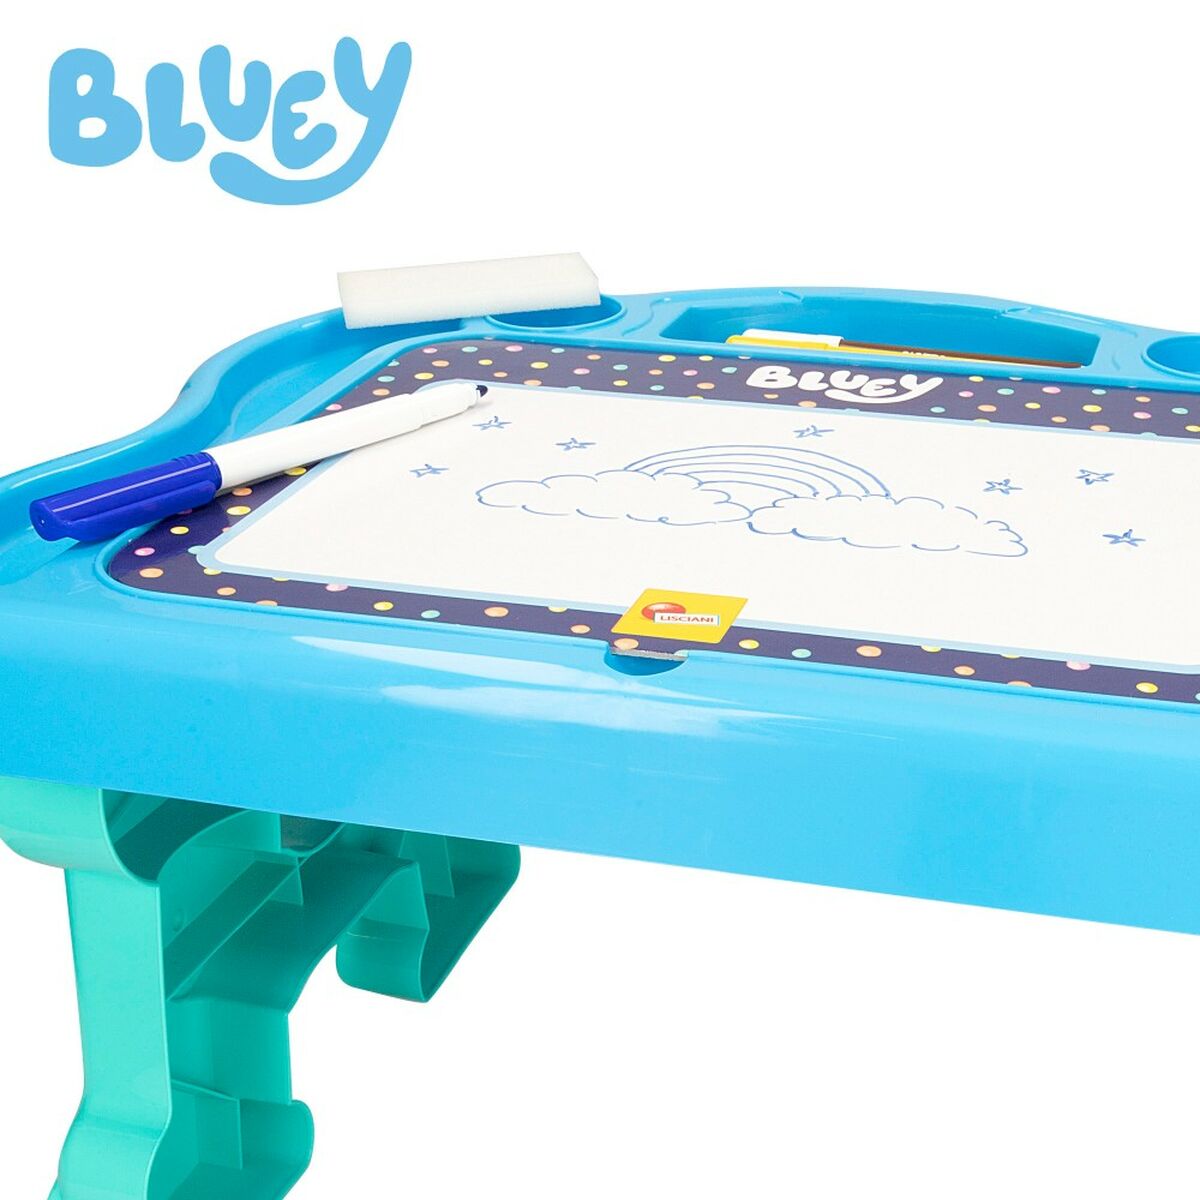 3D-pussel Bluey Teckning 48 x 29 x 38 cm (6 antal)-Leksaker och spel, Pussel och hjärngrupper-Bluey-peaceofhome.se